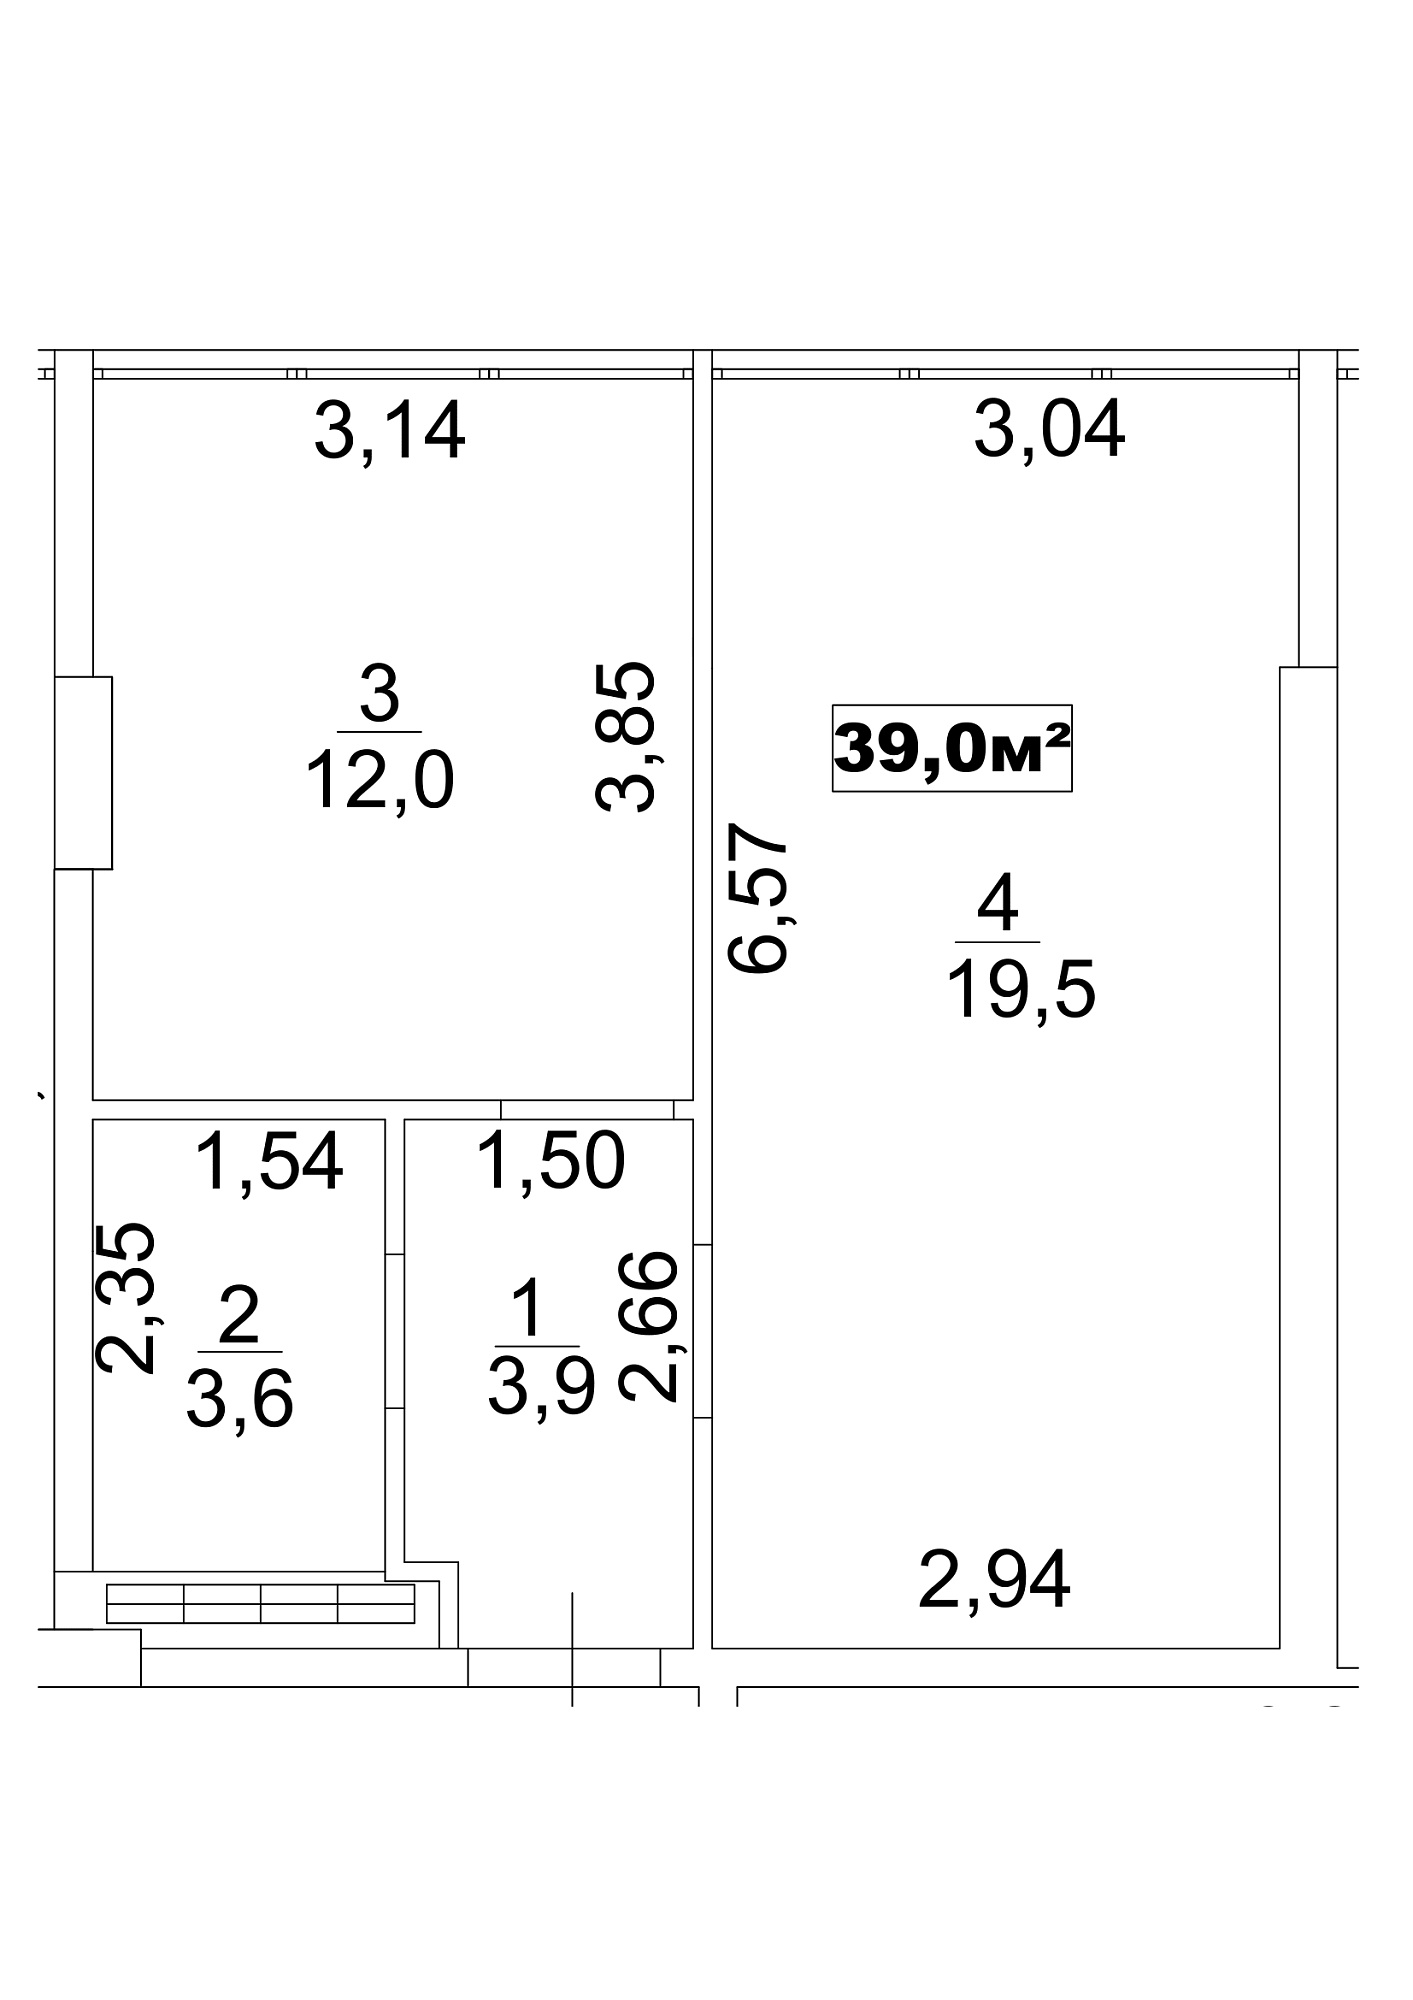 Планировка 1-к квартира площей 39м2, AB-13-07/0057а.